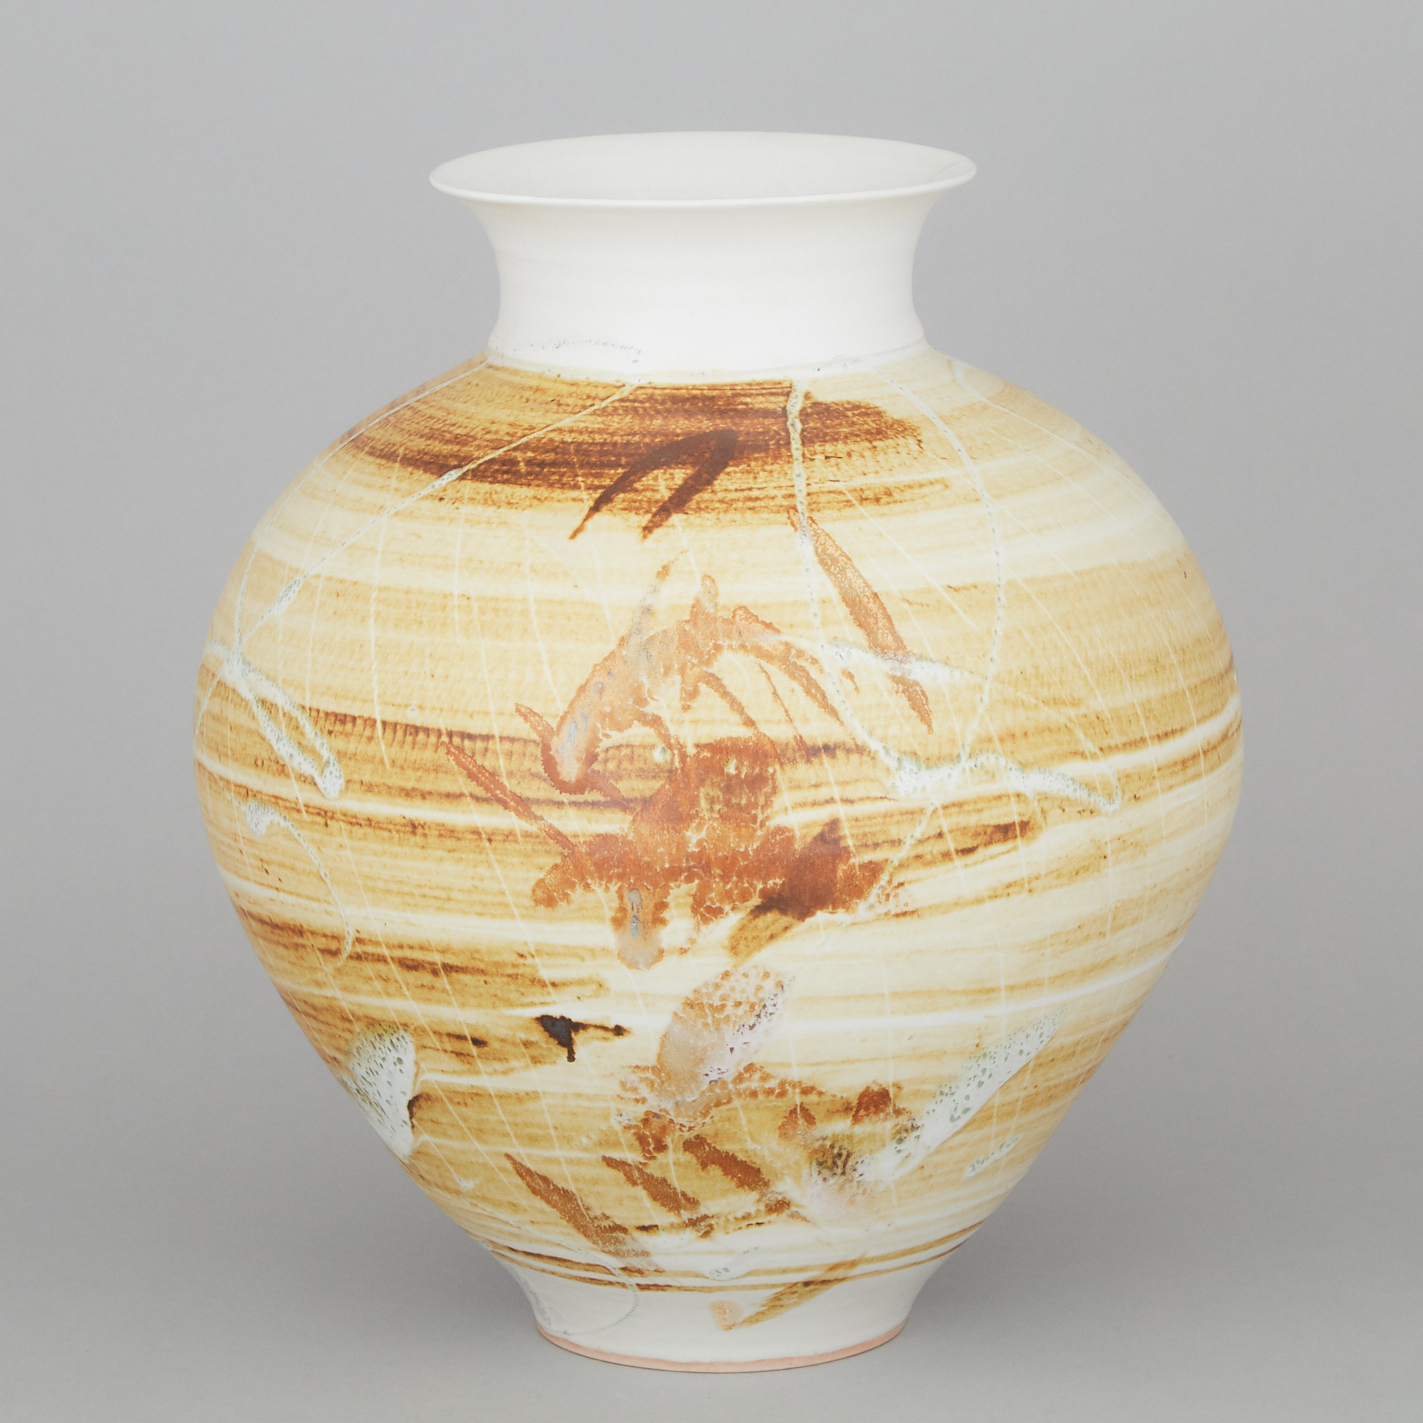 Kayo O'Young (Canadian, b.1950), Large Cream Glazed Vase, 1992